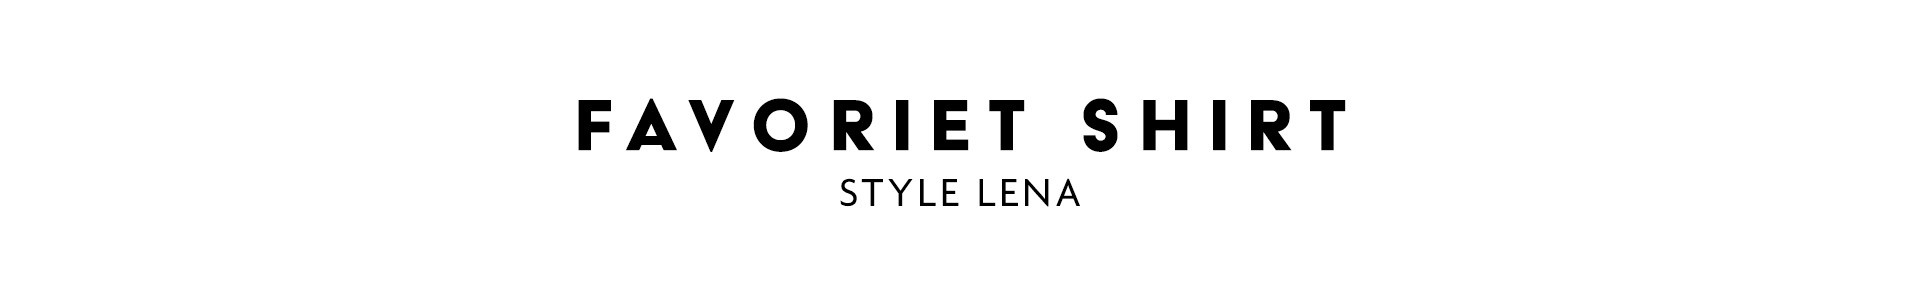 Favoriet shirt – Style Lena